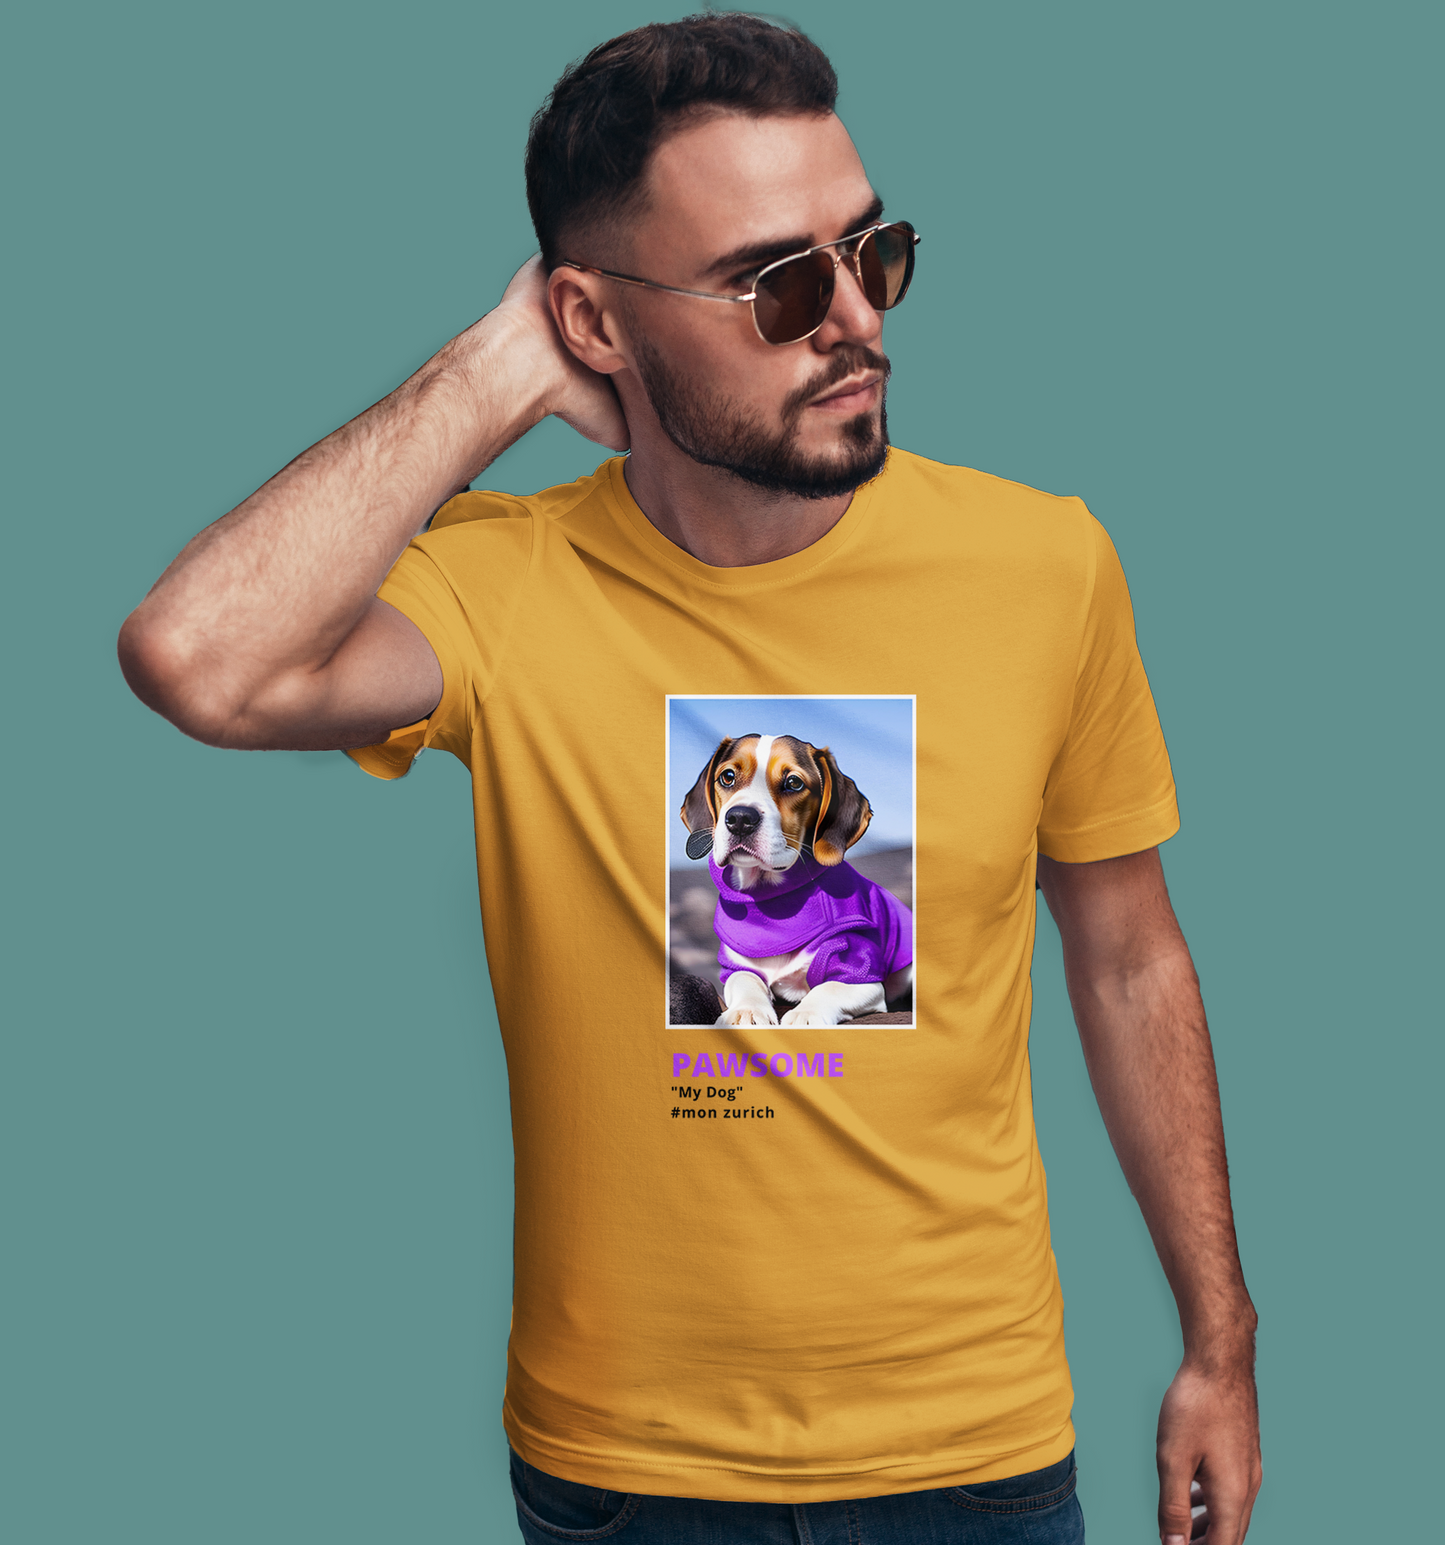 Pawsome, My Dog T-Shirt In Light - Mon Zurich Originals